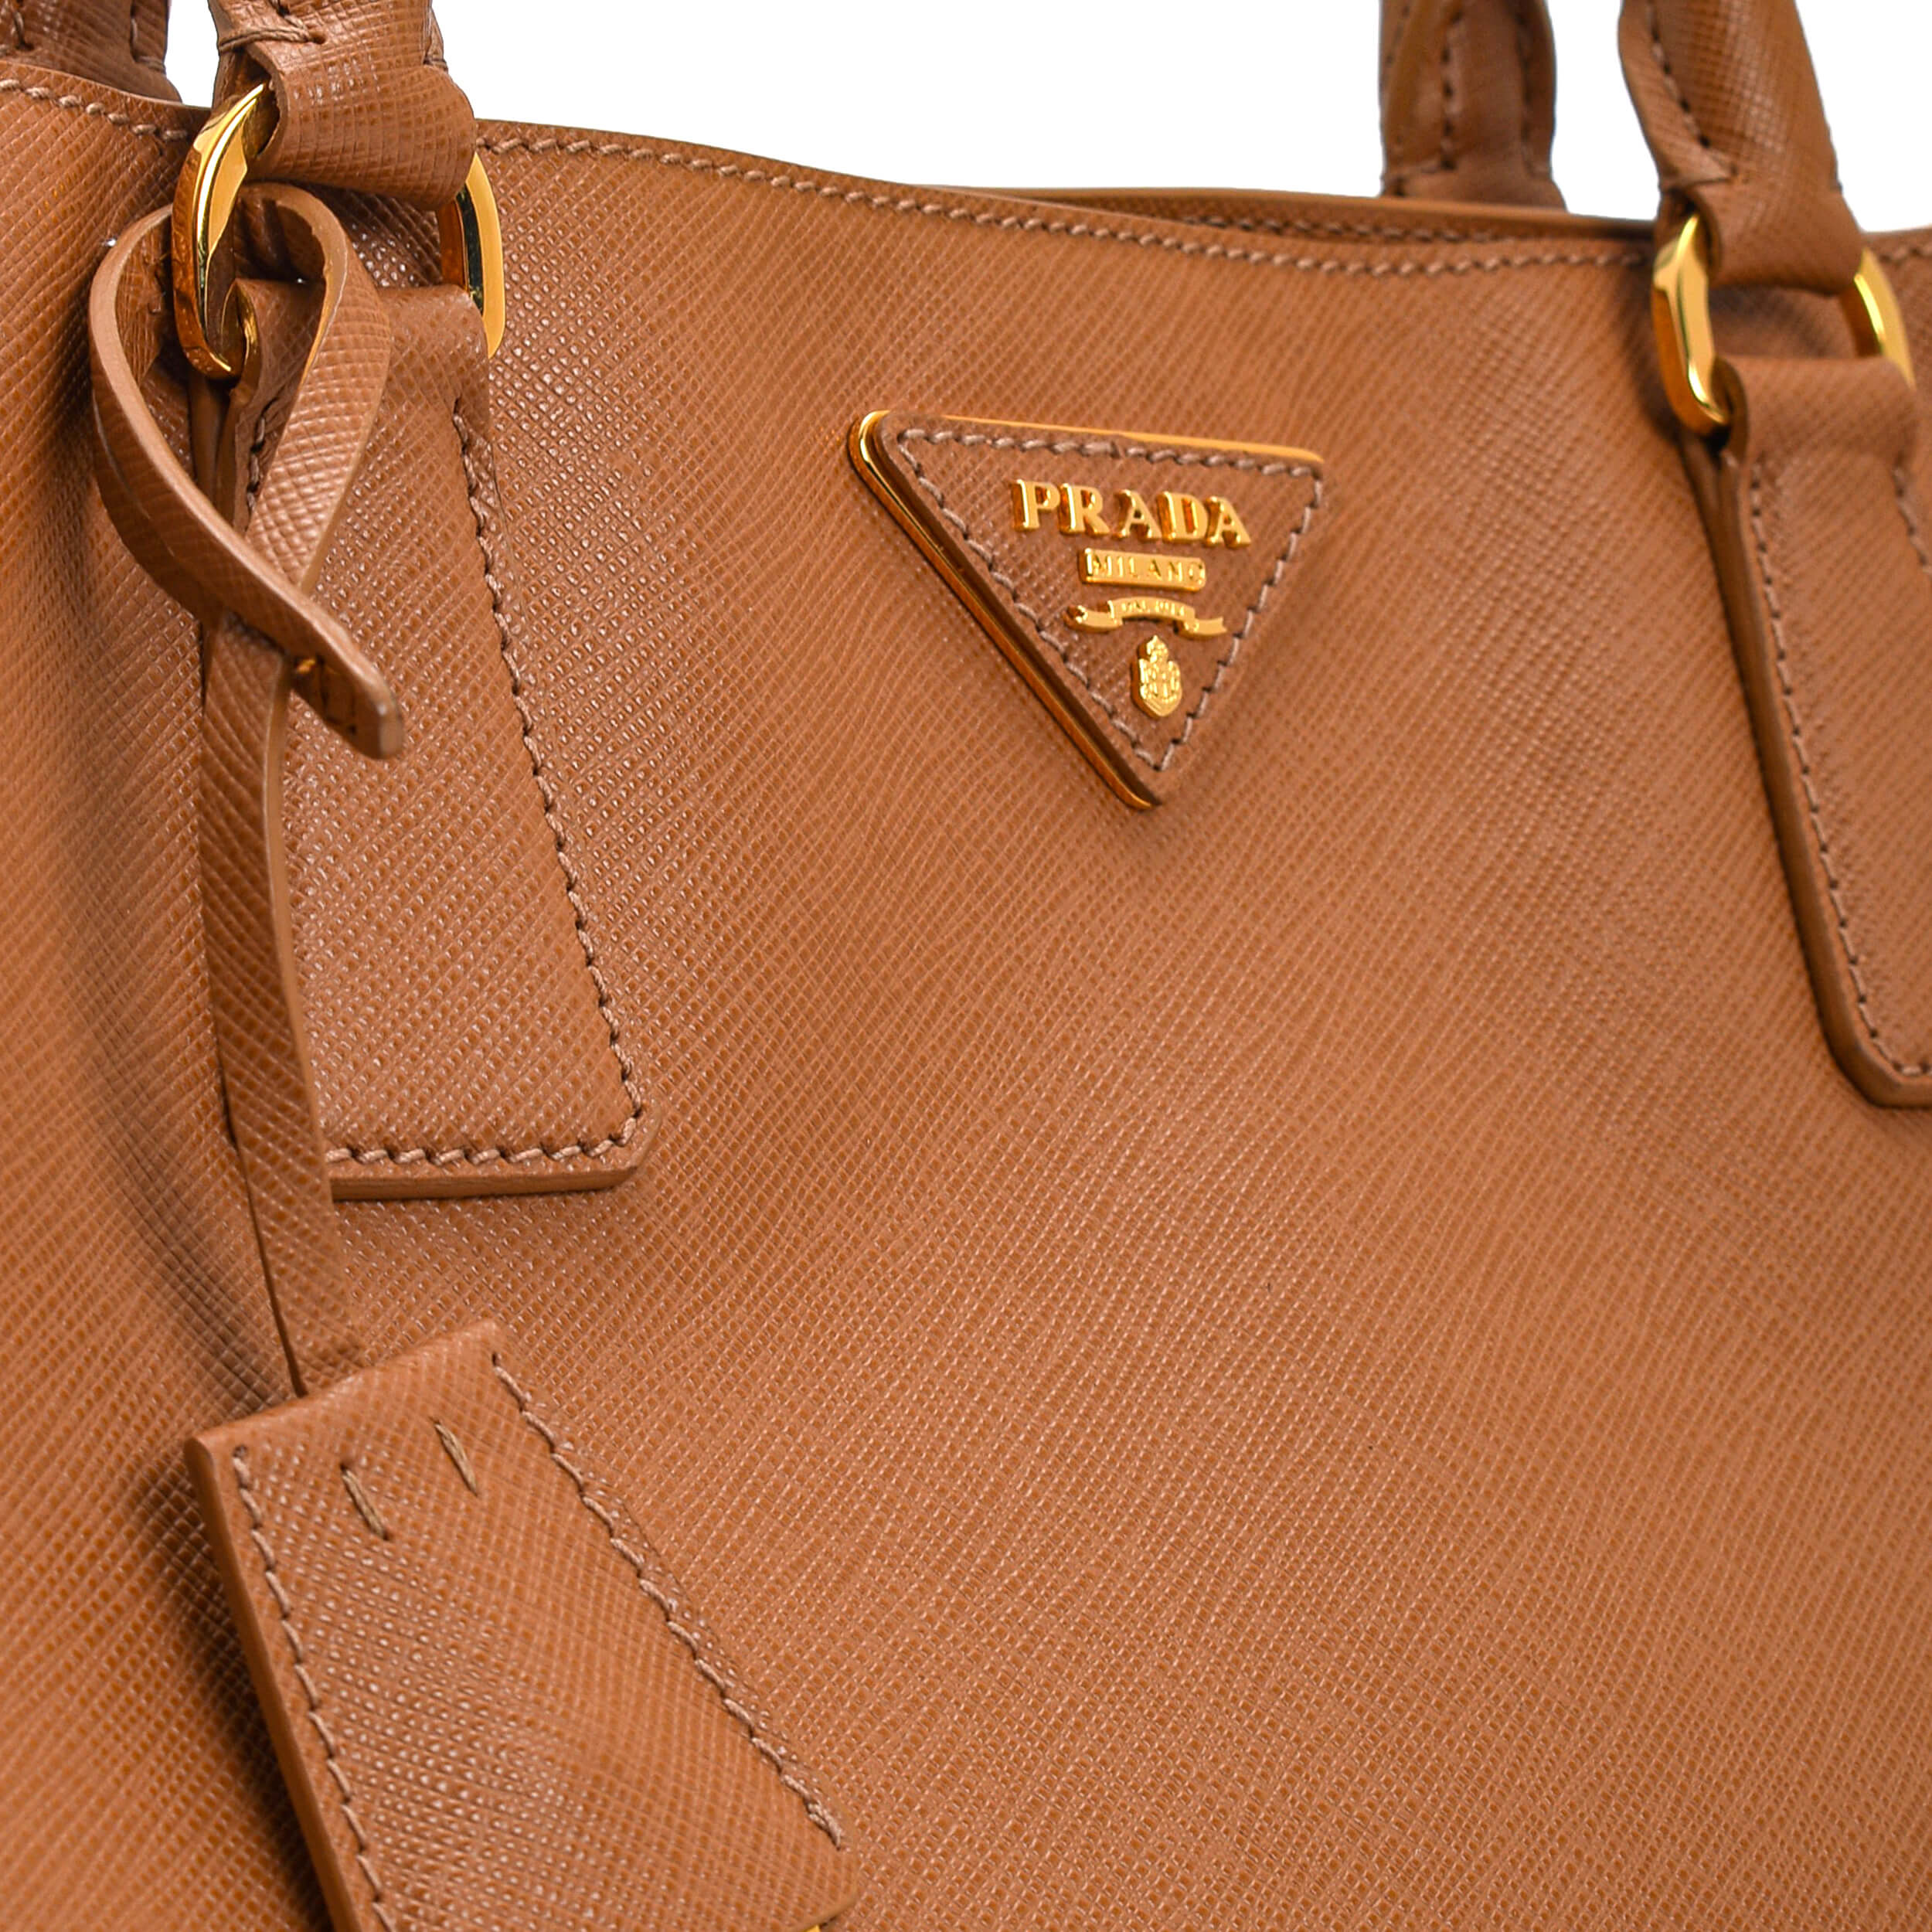 Prada - Brown Saffiano Leather Medium Galleria Bag